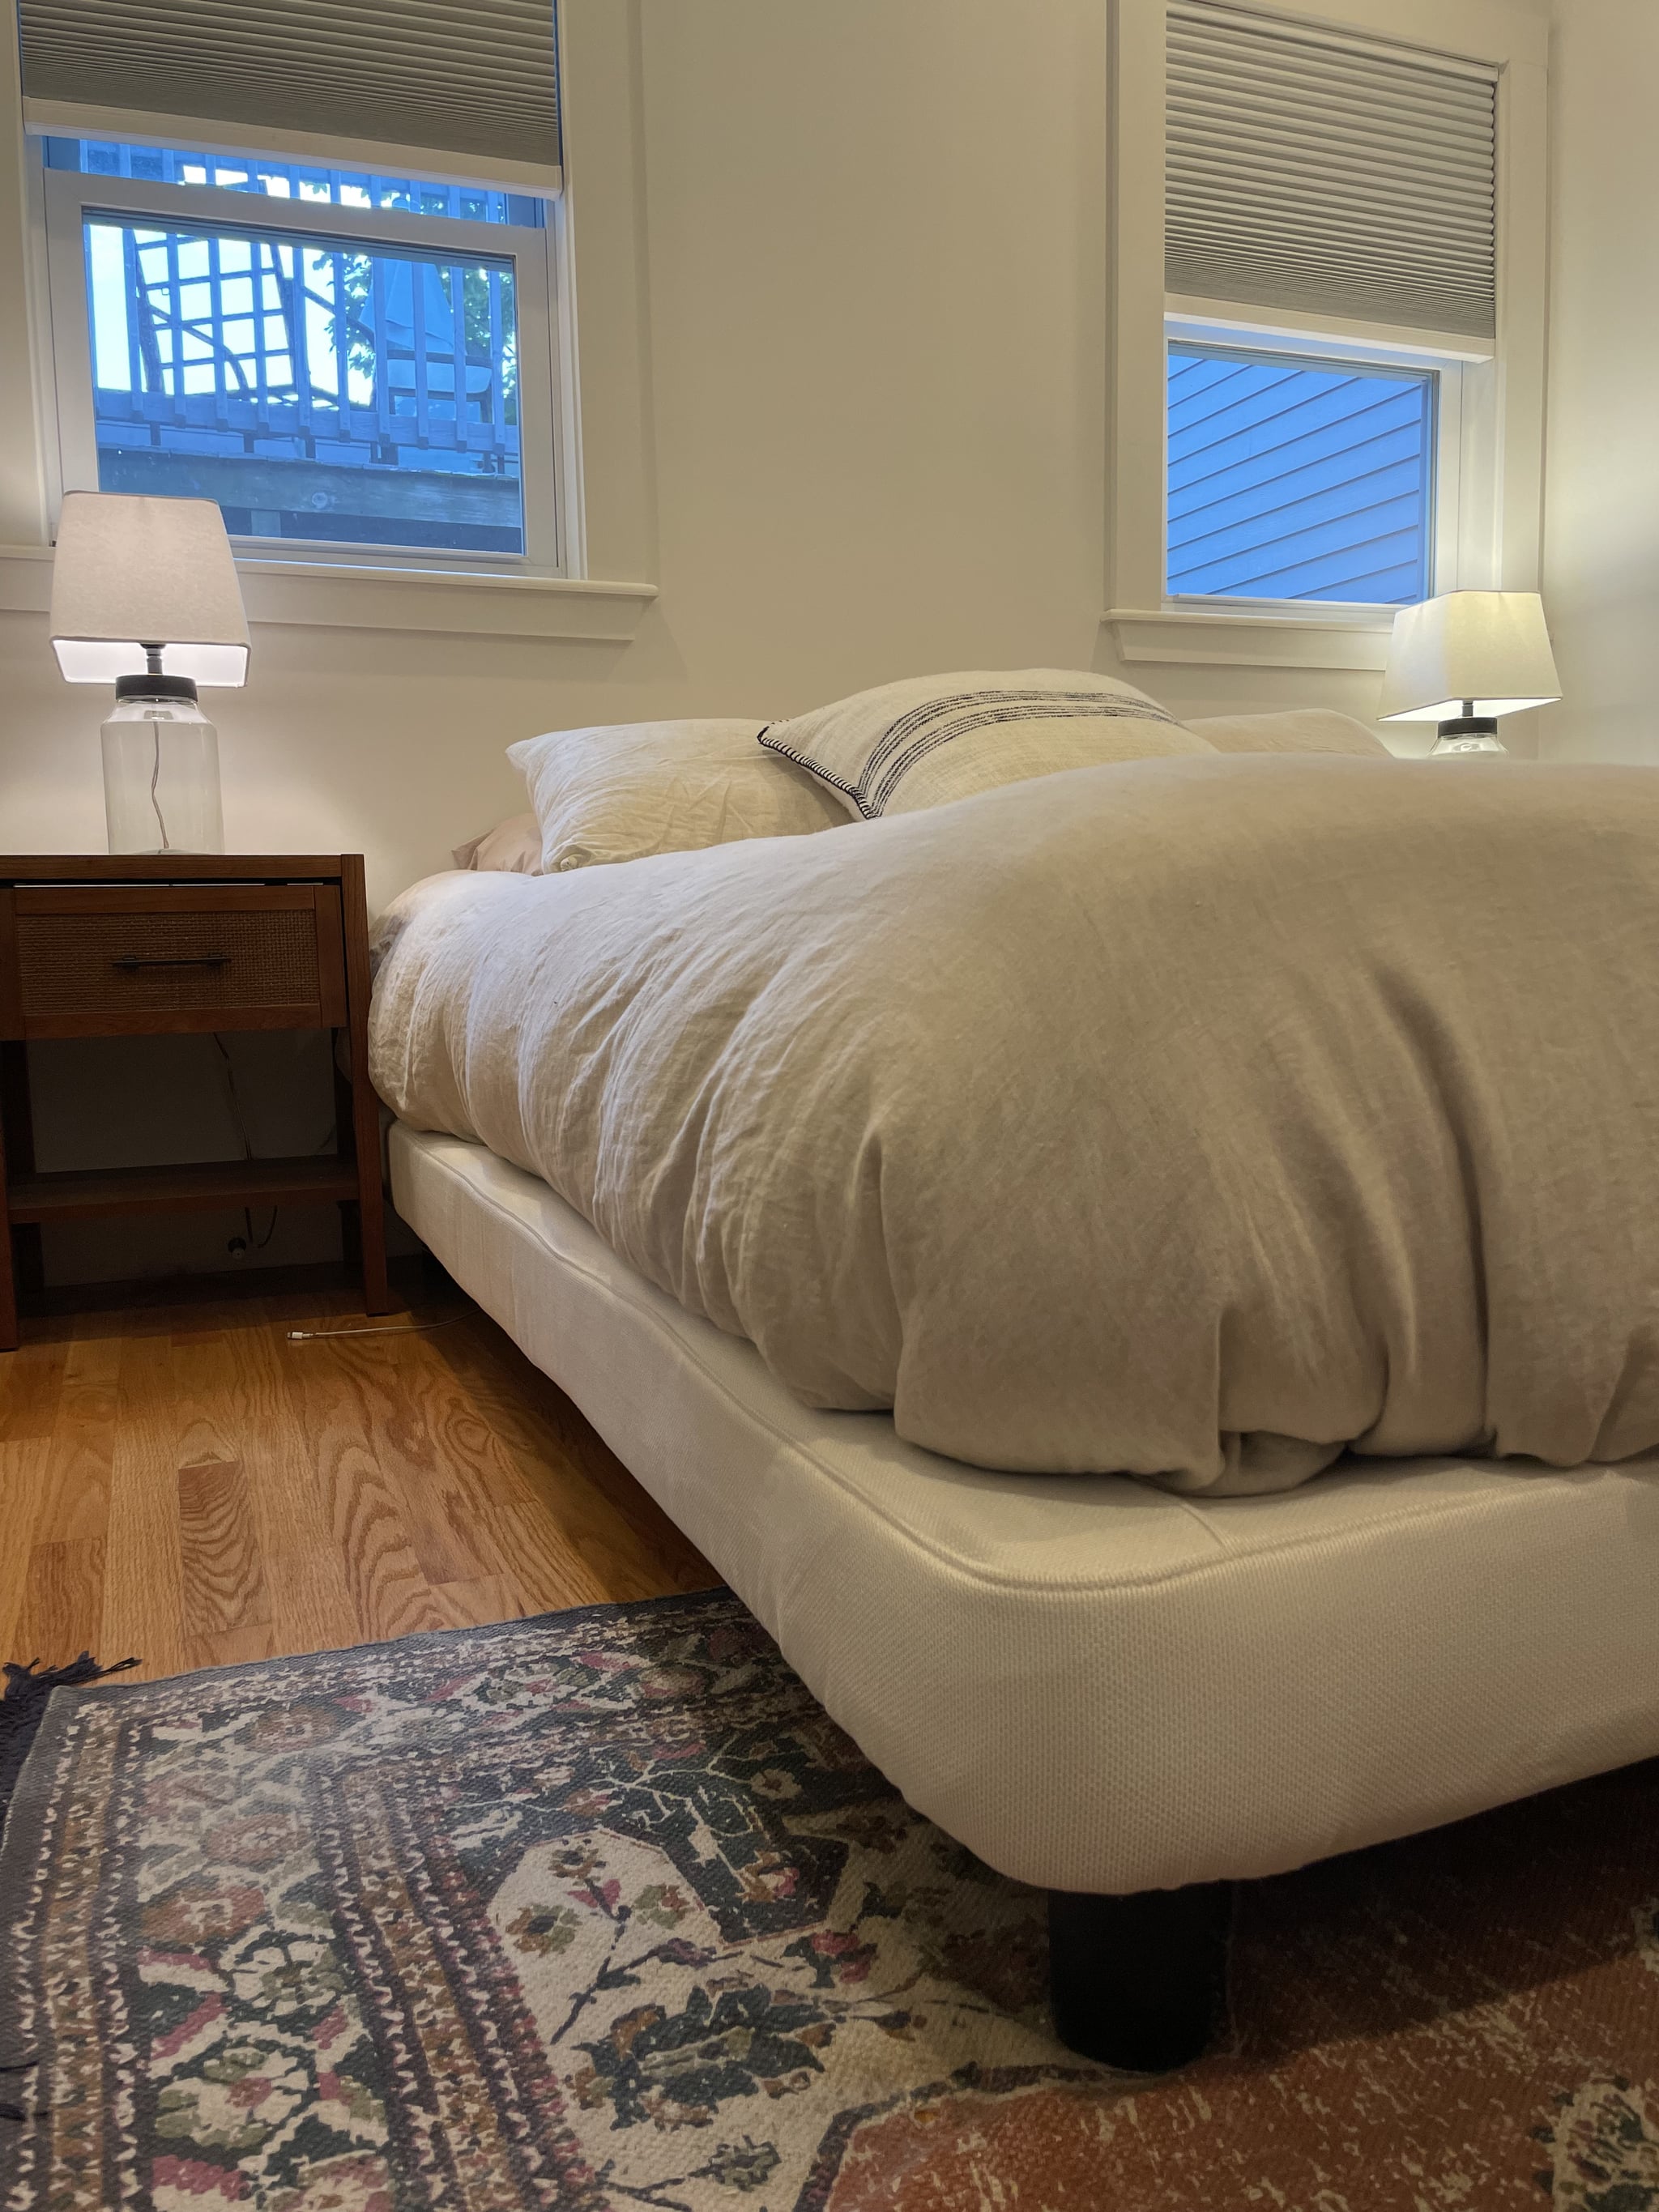 Casper Upholstered Platform Bed Frame in bedroom